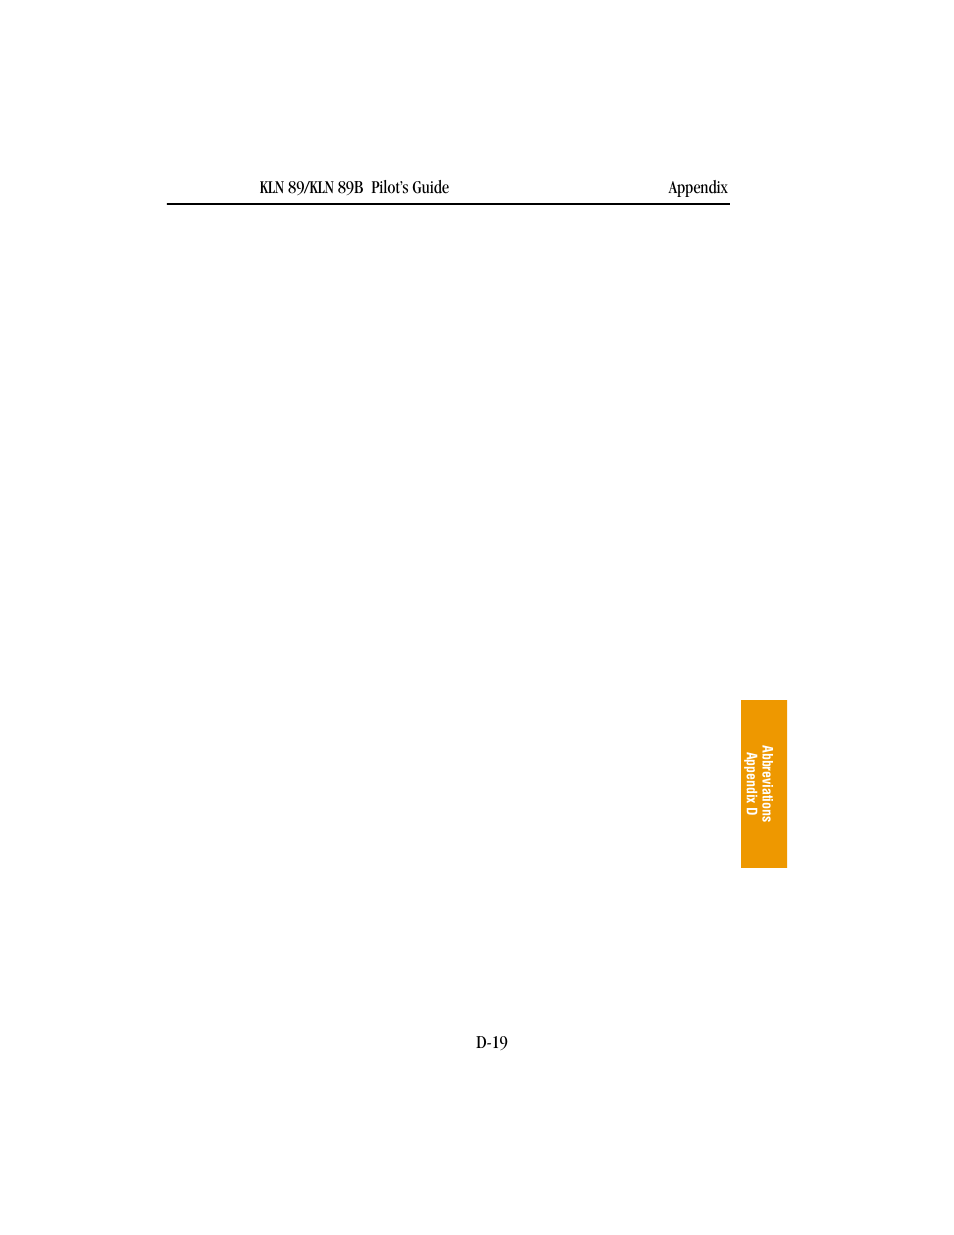 BendixKing KLN 89B - Pilots Guide User Manual | Page 226 / 246